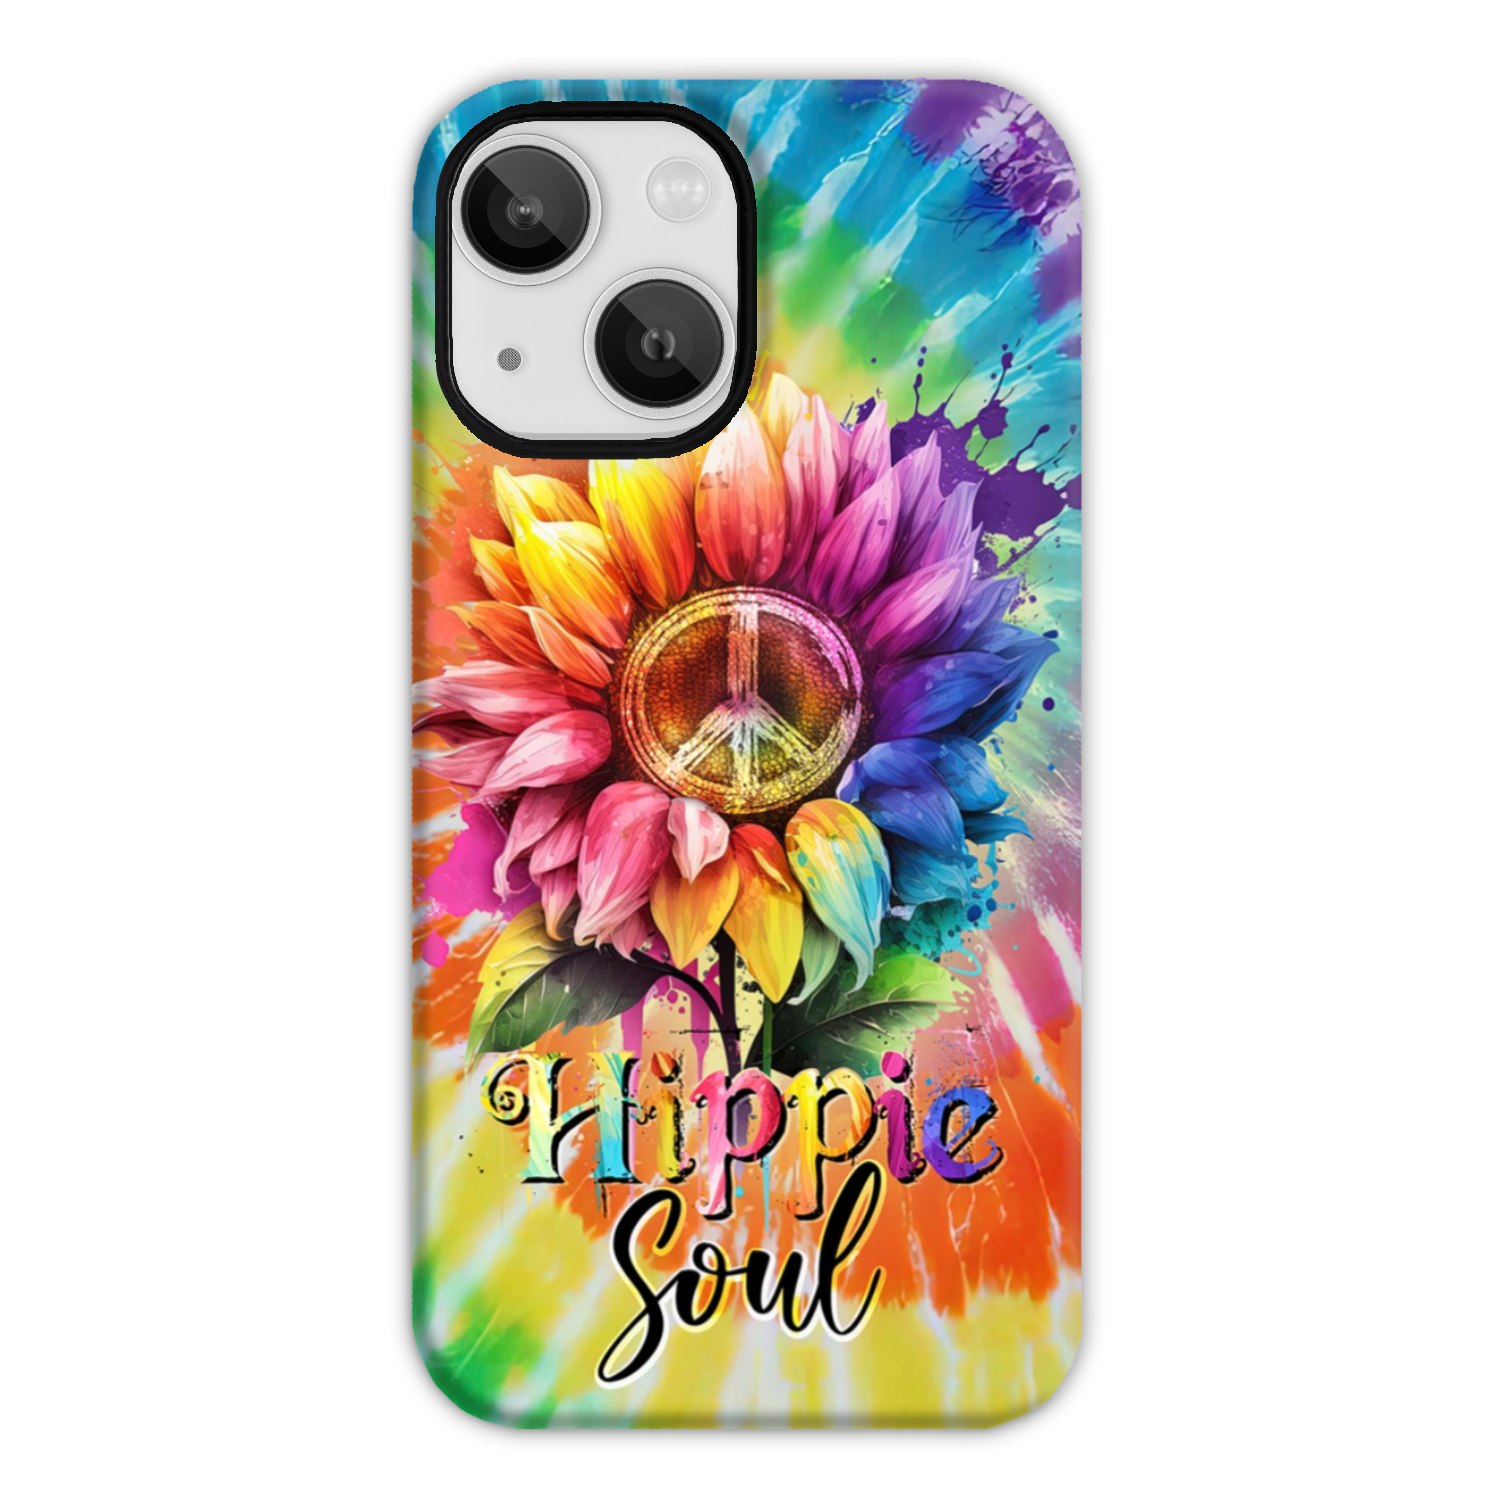 HIPPIE SOUL SUNFLOWER TIE DYE PHONE CASE - TY1702231